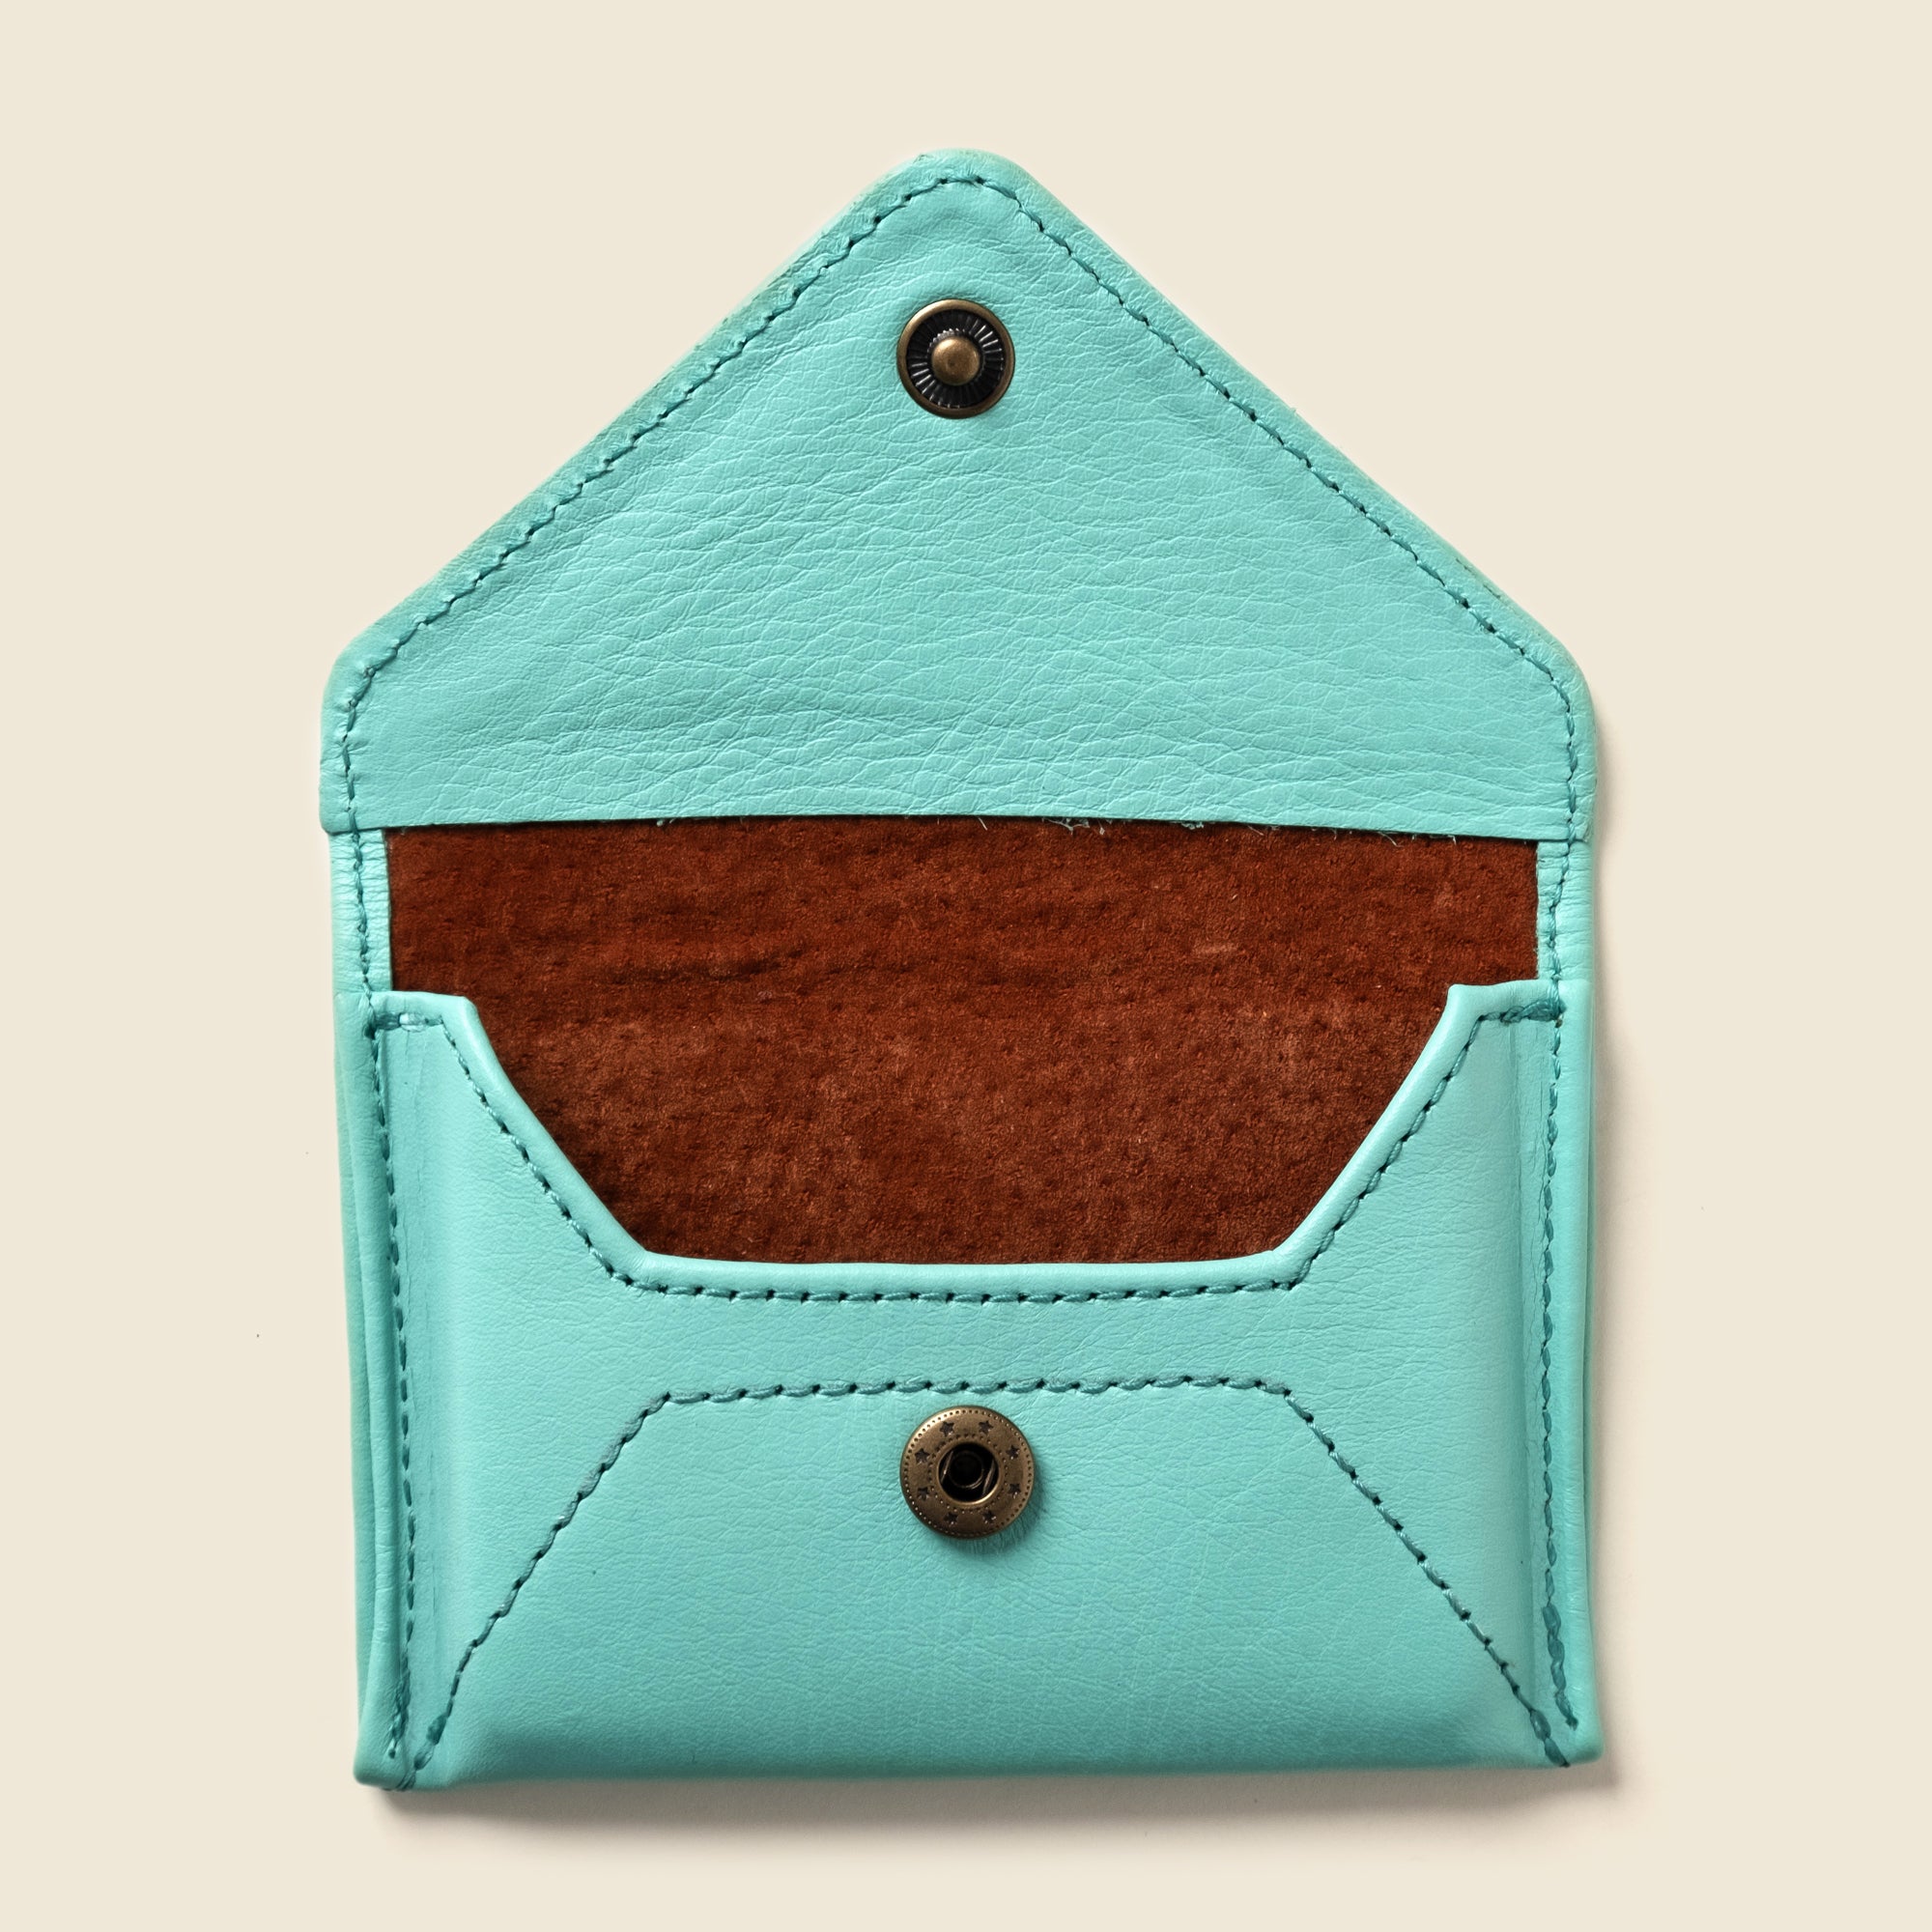 Pastel blue leather envelope wallet